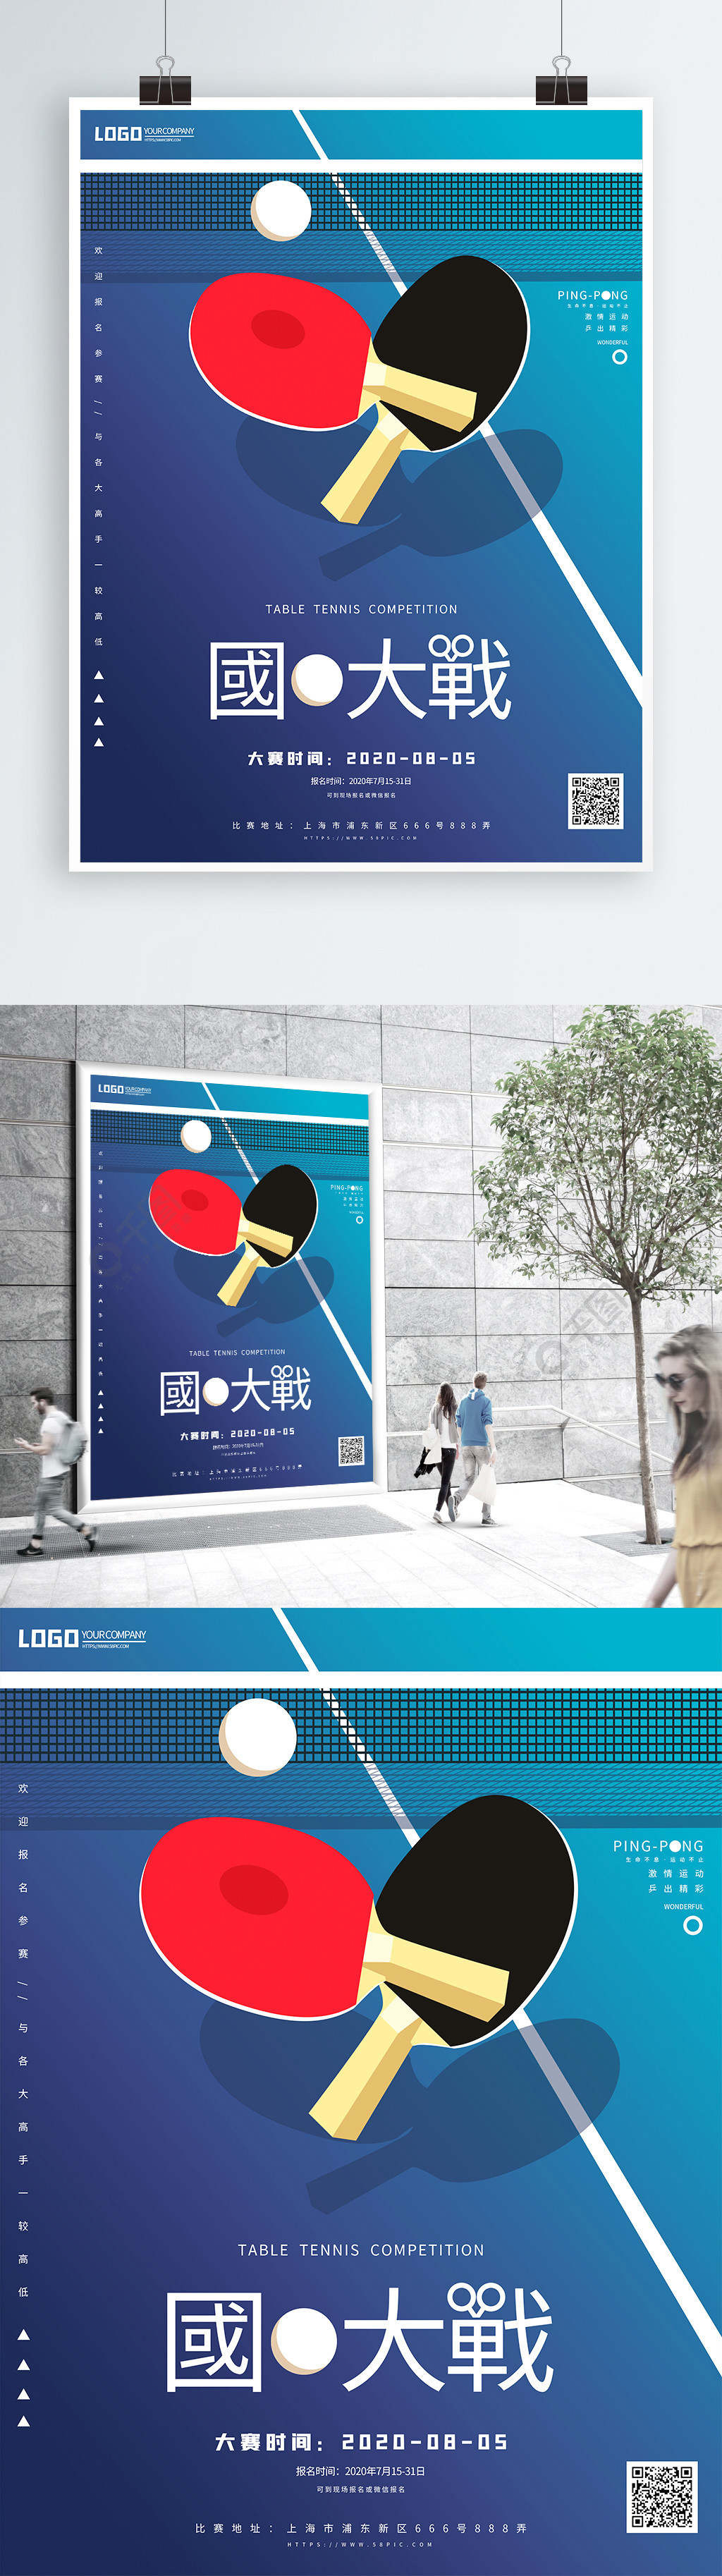 原创手绘简约蓝色乒乓球比赛宣传海报1年前发布